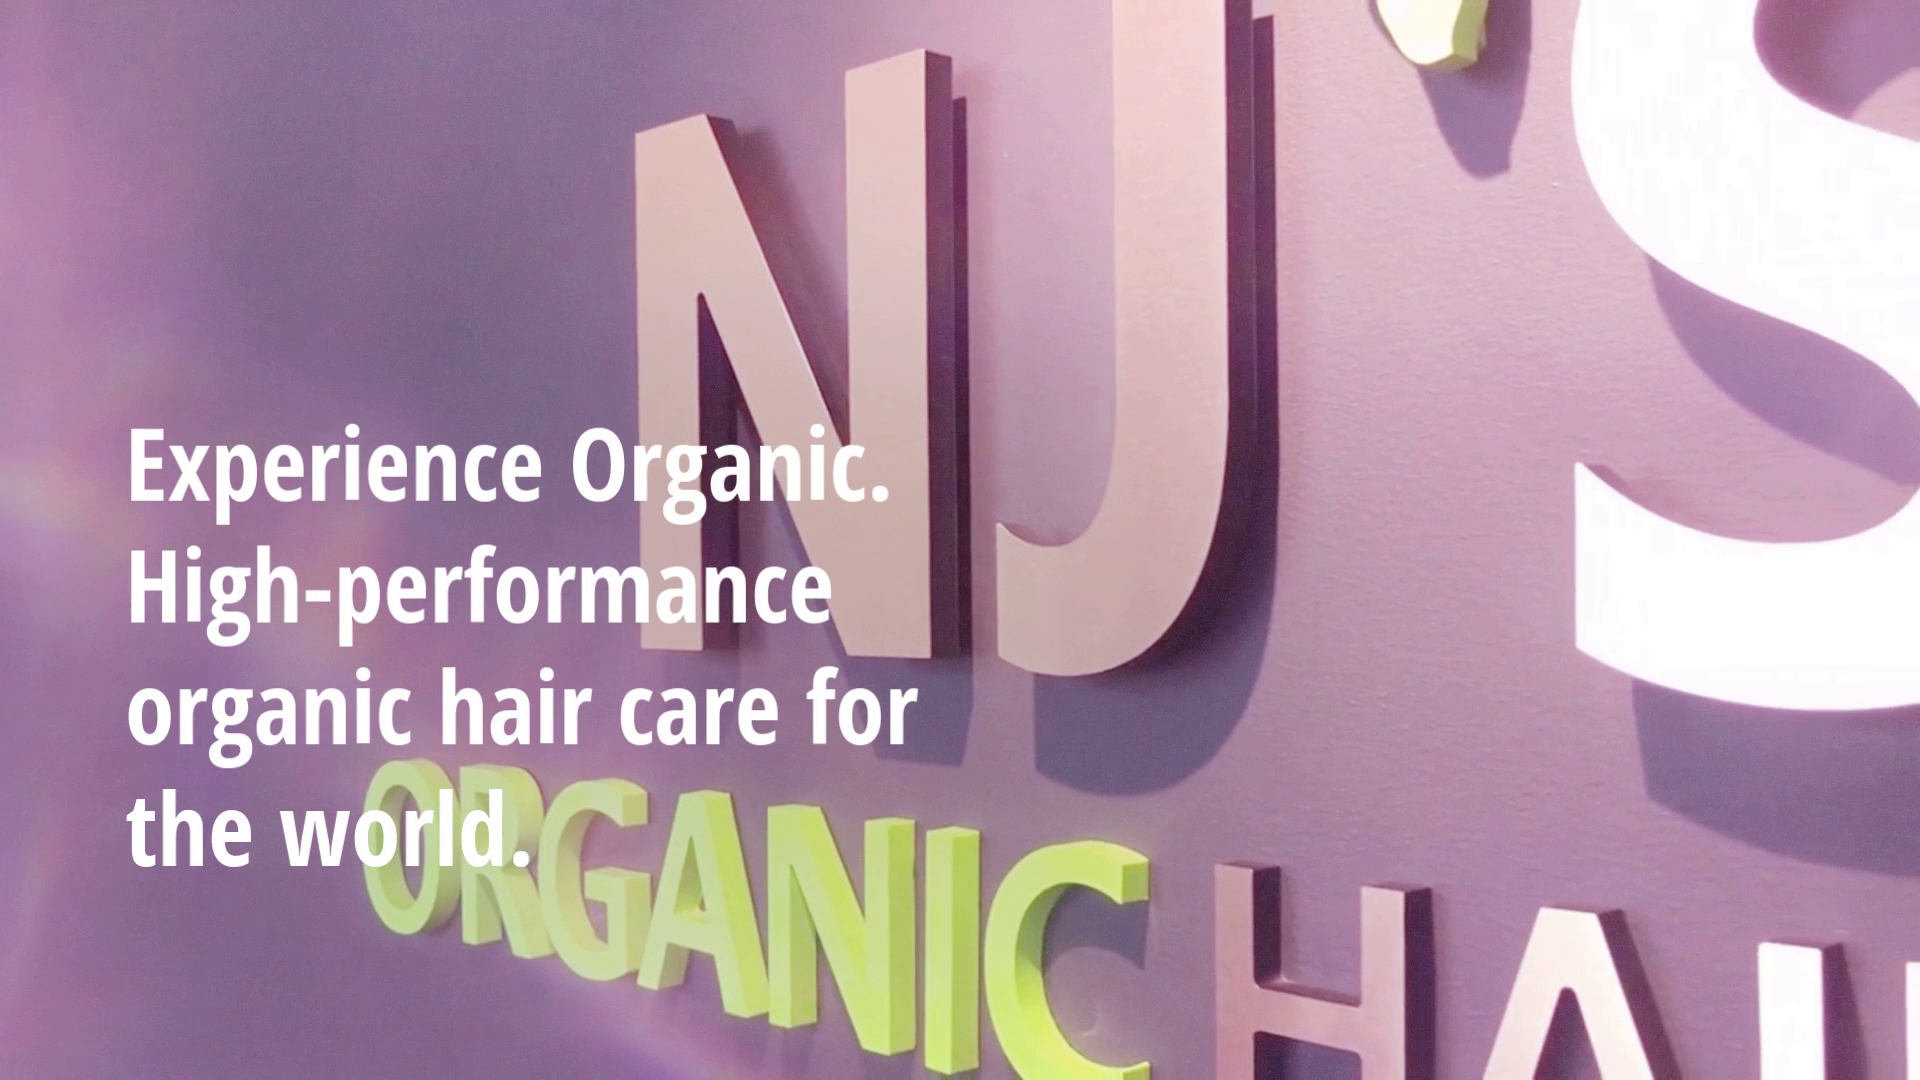 NJ'S Organic hair Salon